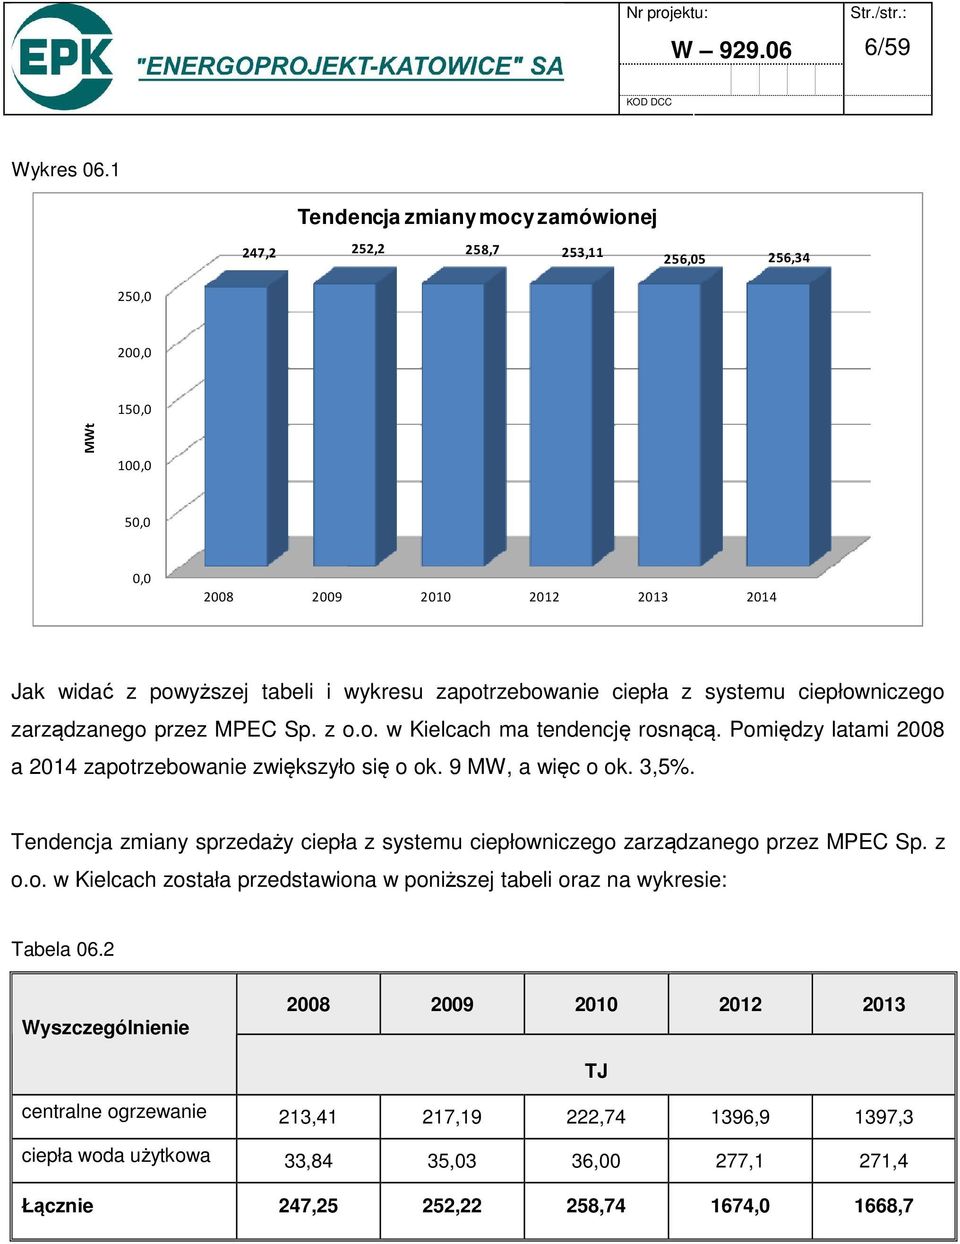 zapotrzebowanie ciepła z systemu ciepłowniczego zarządzanego przez MPEC Sp. z o.o. w Kielcach ma tendencję rosnącą. Pomiędzy latami 2008 a 2014 zapotrzebowanie zwiększyło się o ok.